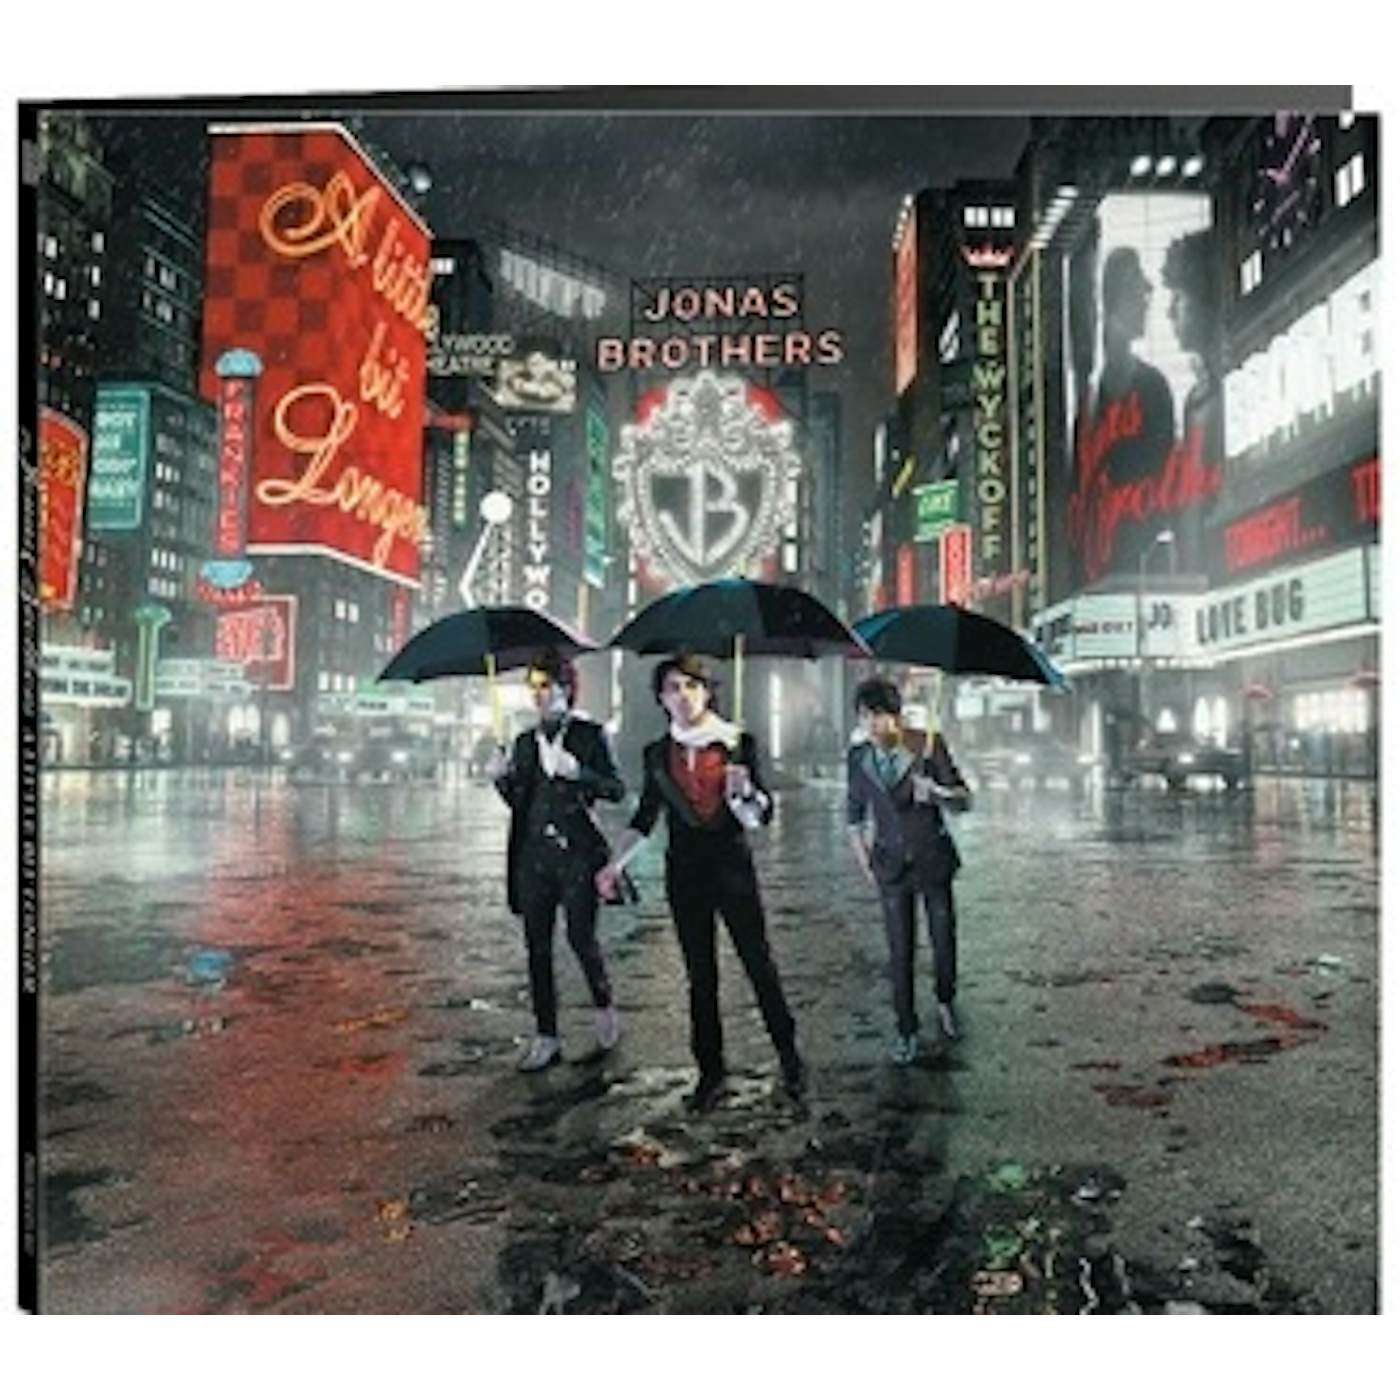 Jonas Brothers LITTLE BIT LONGER (REISSUE) CD